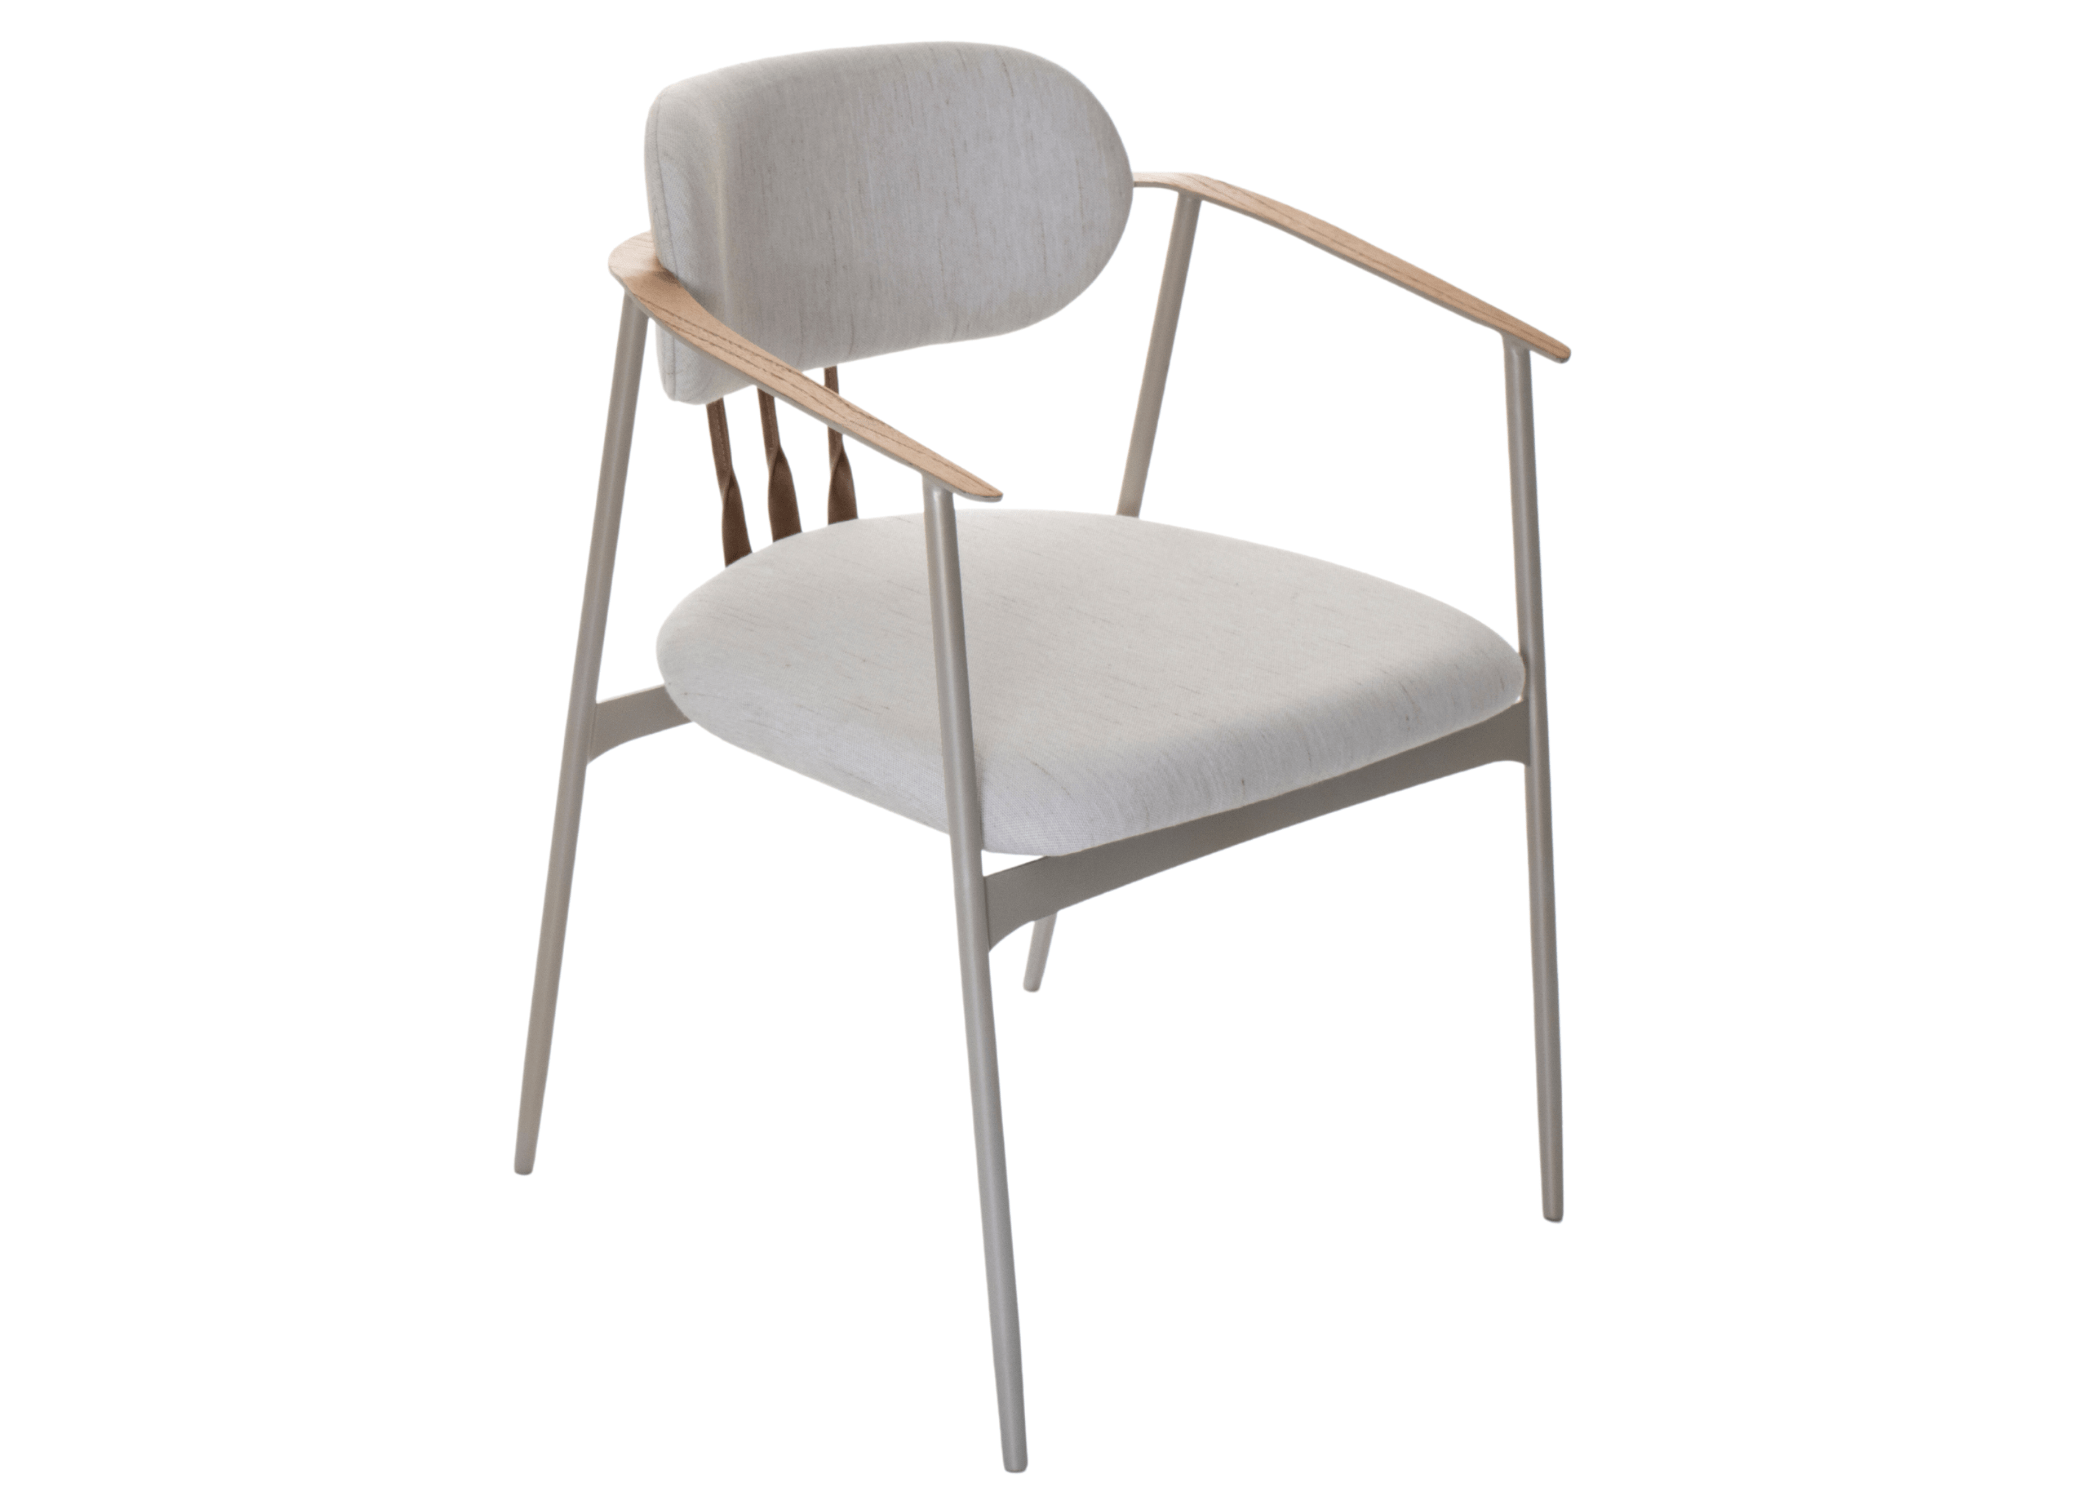 Cadeira Malibu com braço: design contemporâneo e funcionalidade excepcional.